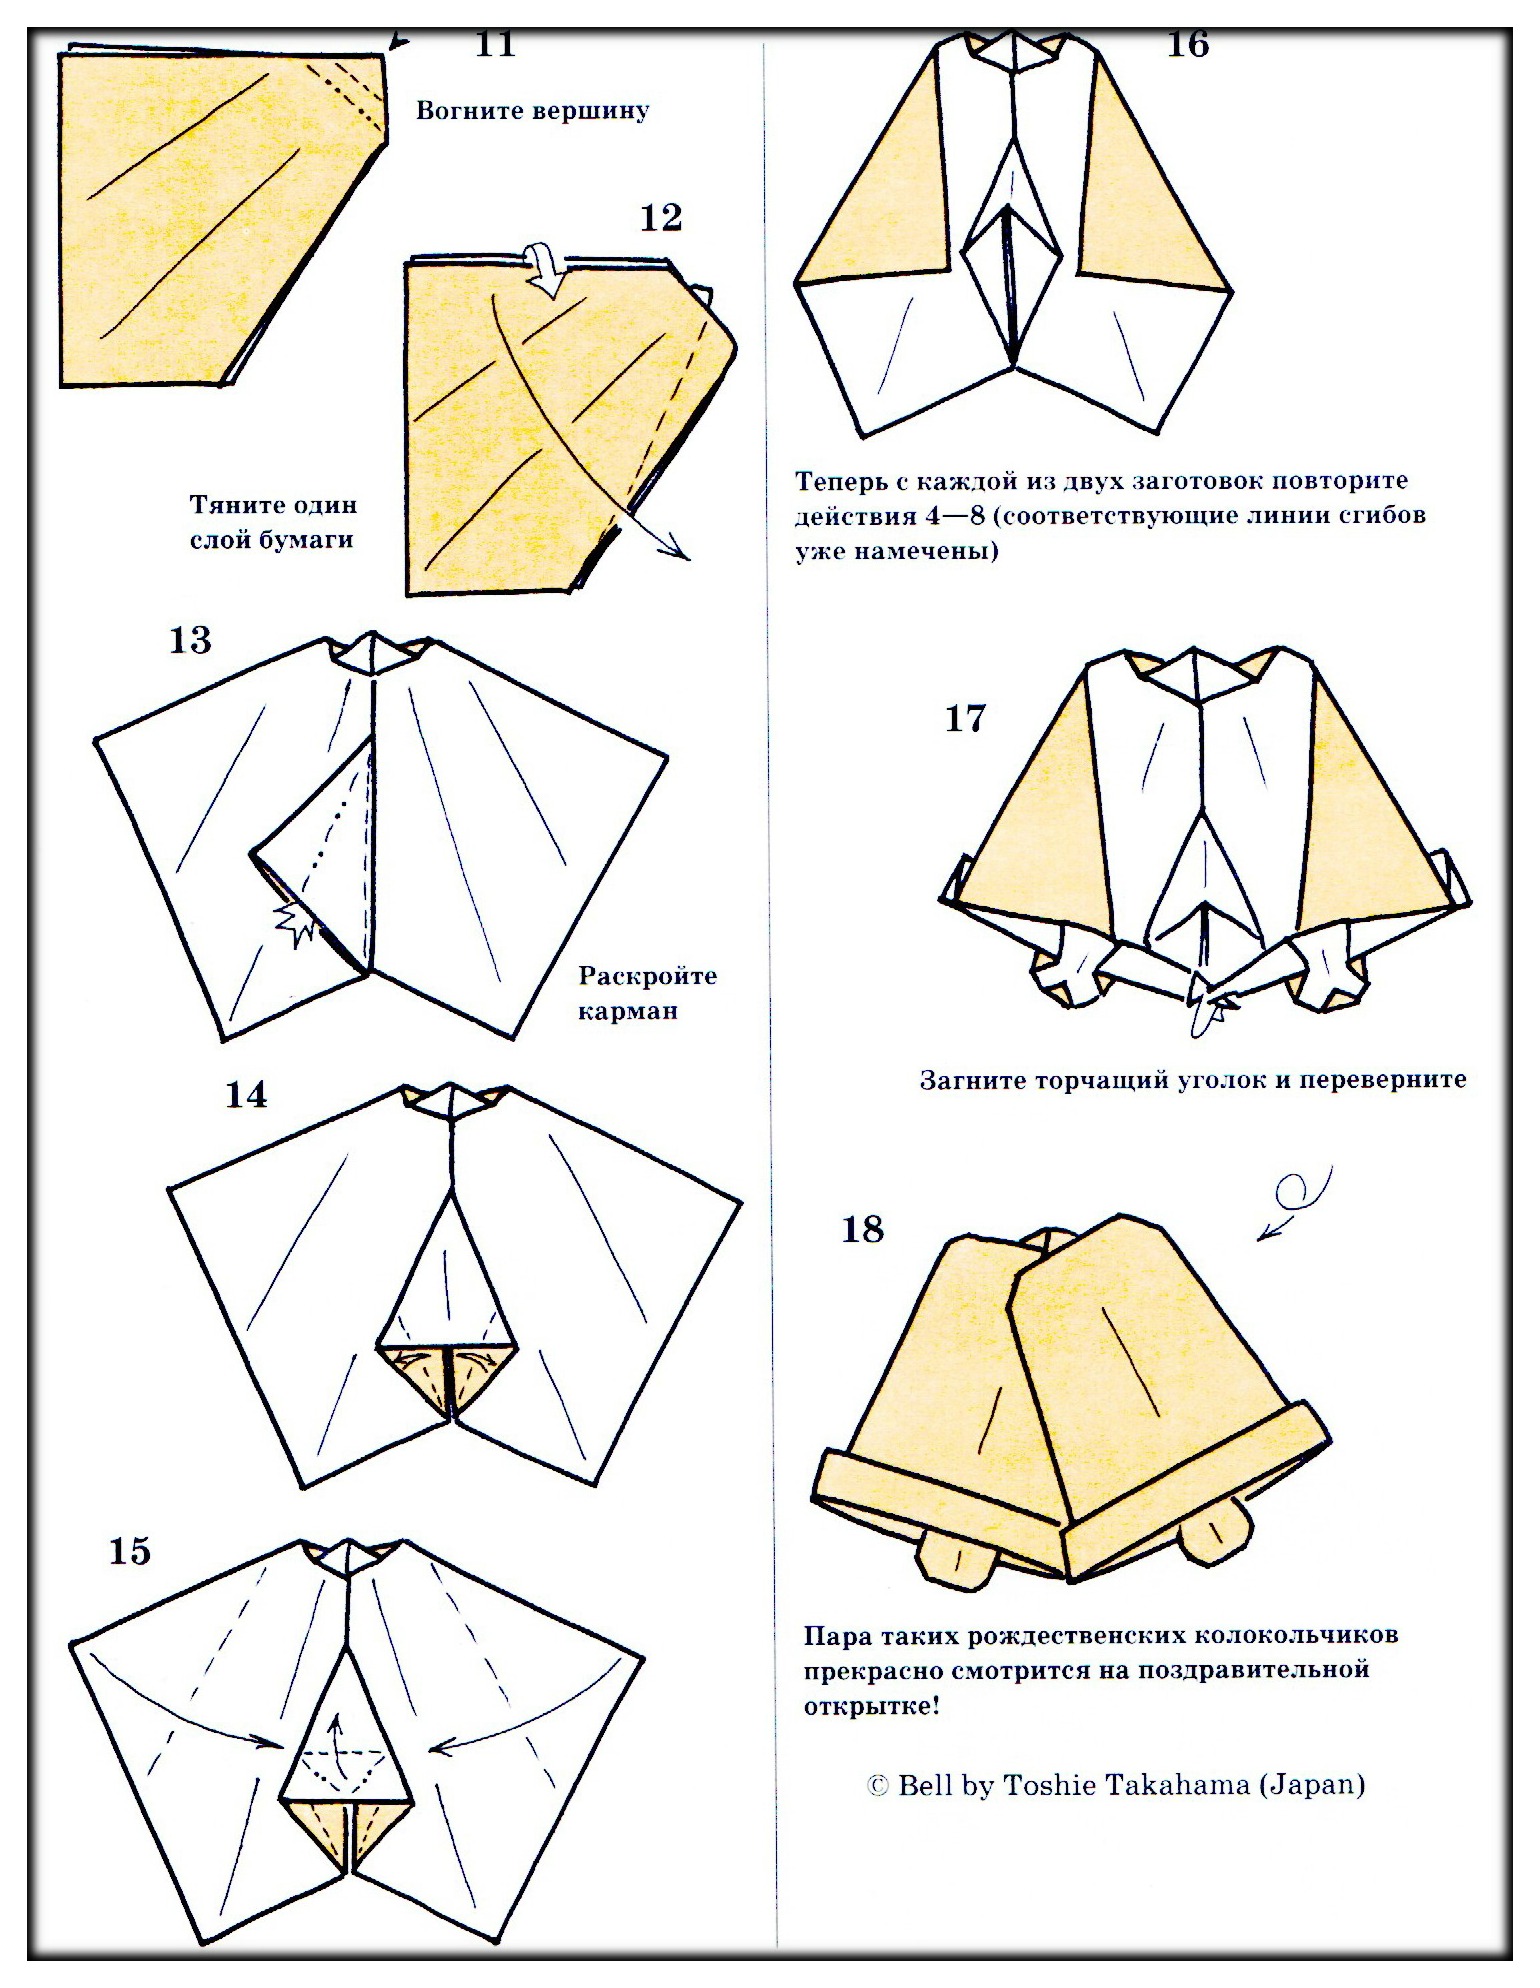 Звонок колокольчик схема. Оригами колокольчик схема для детей. Оригами колокольчик из бумаги для детей. Оригами колокольчик из бумаги схема для детей. Как сделать объемный колокольчик.